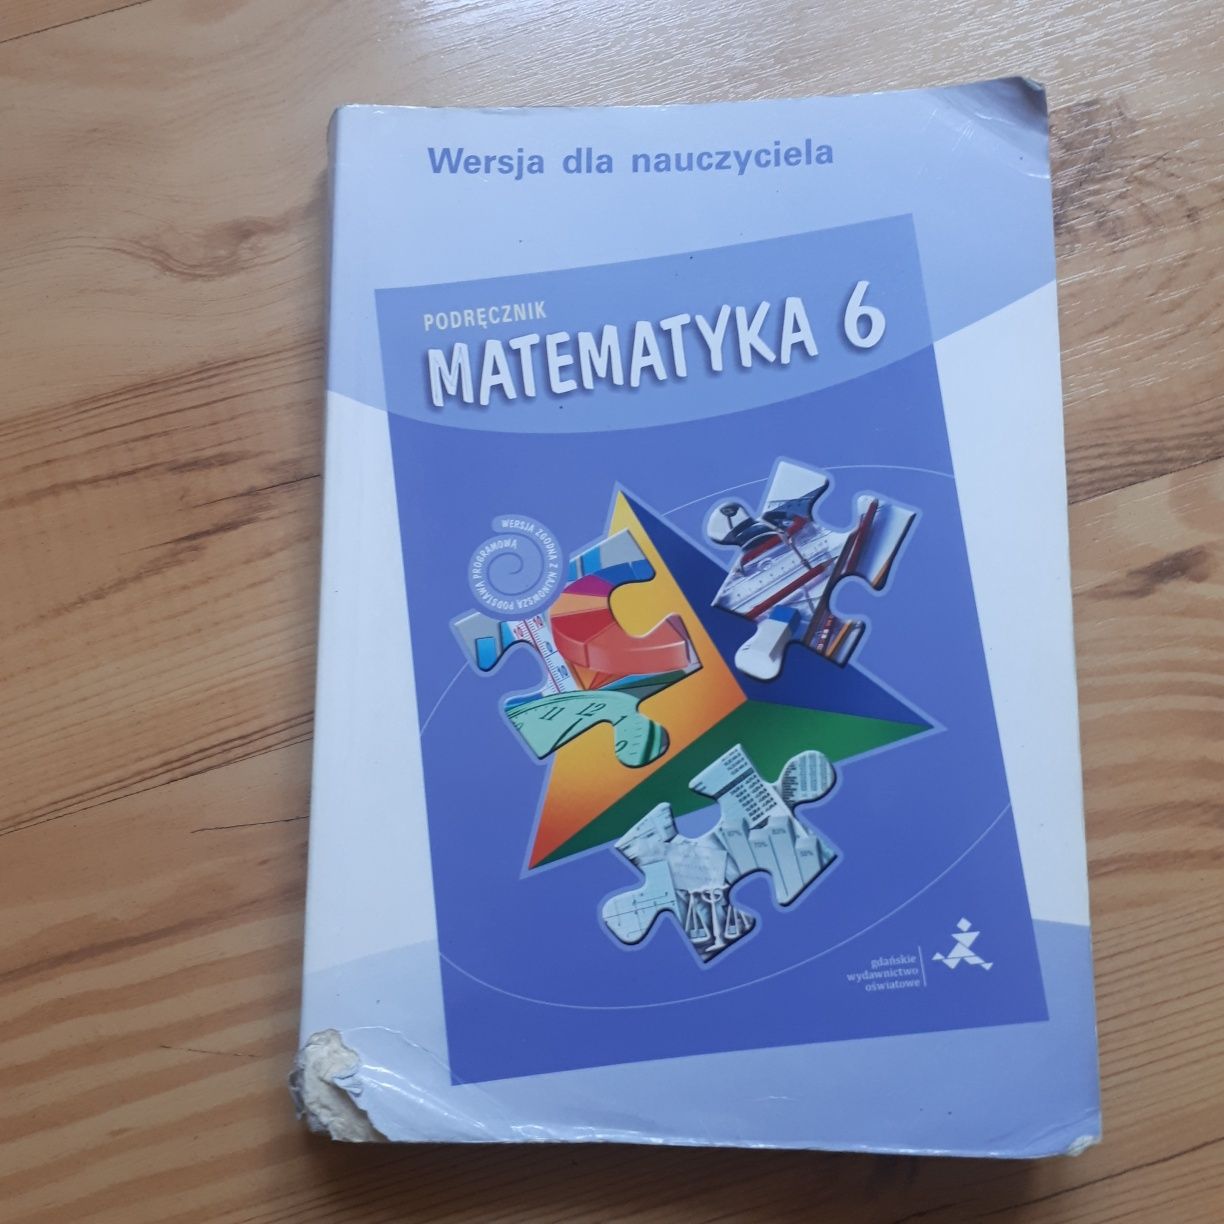 Matematyka 6 podręcznik - wersja dla nauczyciela